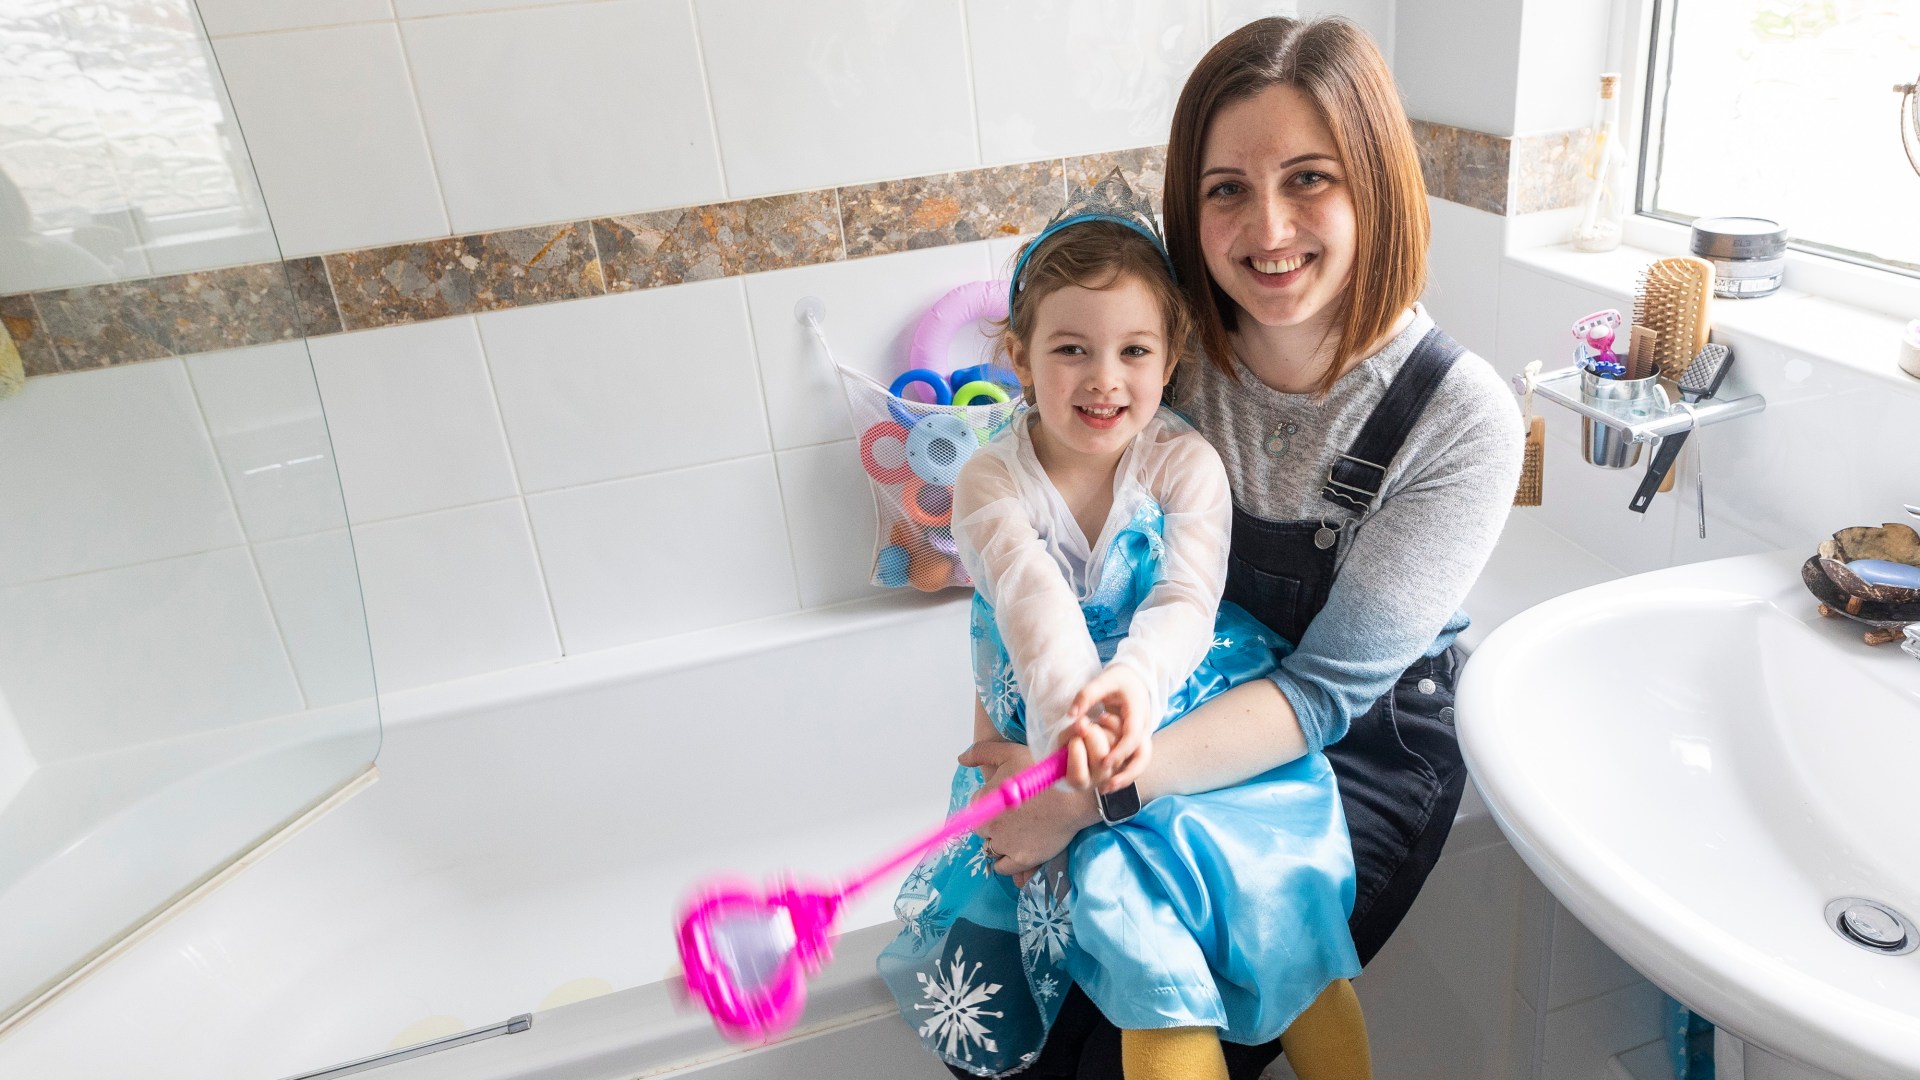 Una niña de 3 años salvó la vida de su madre cuando se cayó en la bañera durante un terrible ataque epiléptico